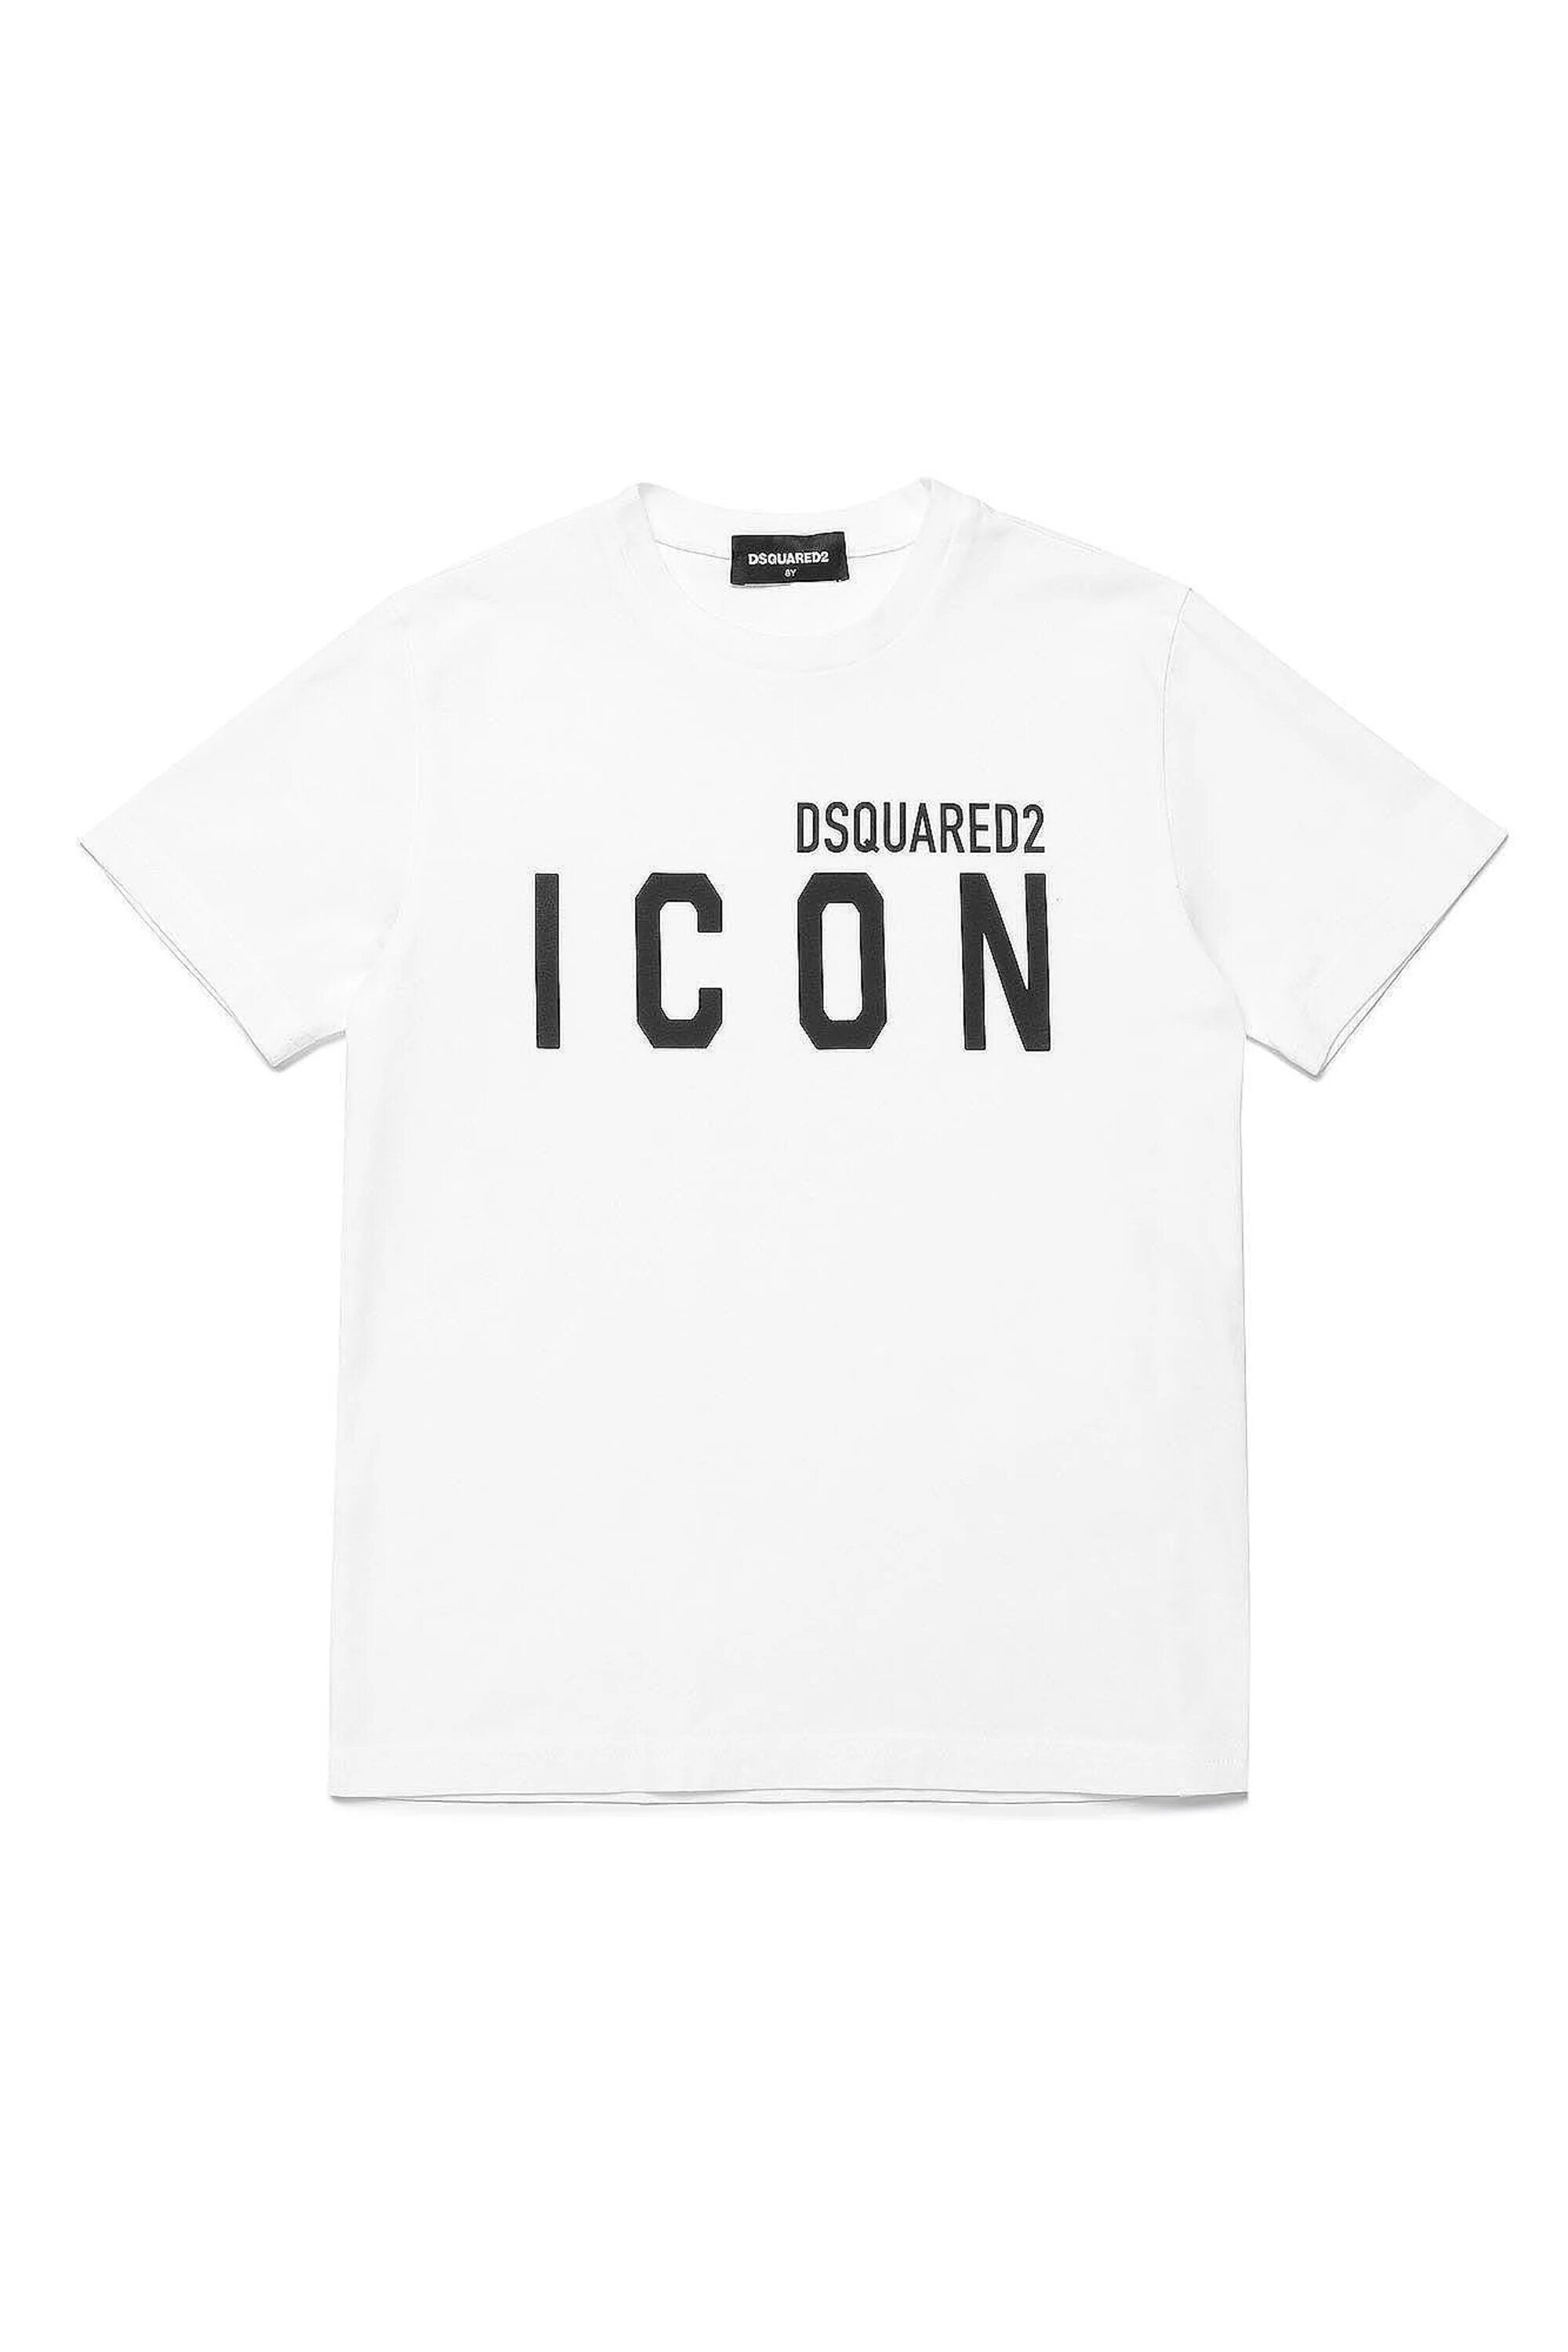 DSQUARED2-T-Shirt Unisex Bambino Icon-Bianco